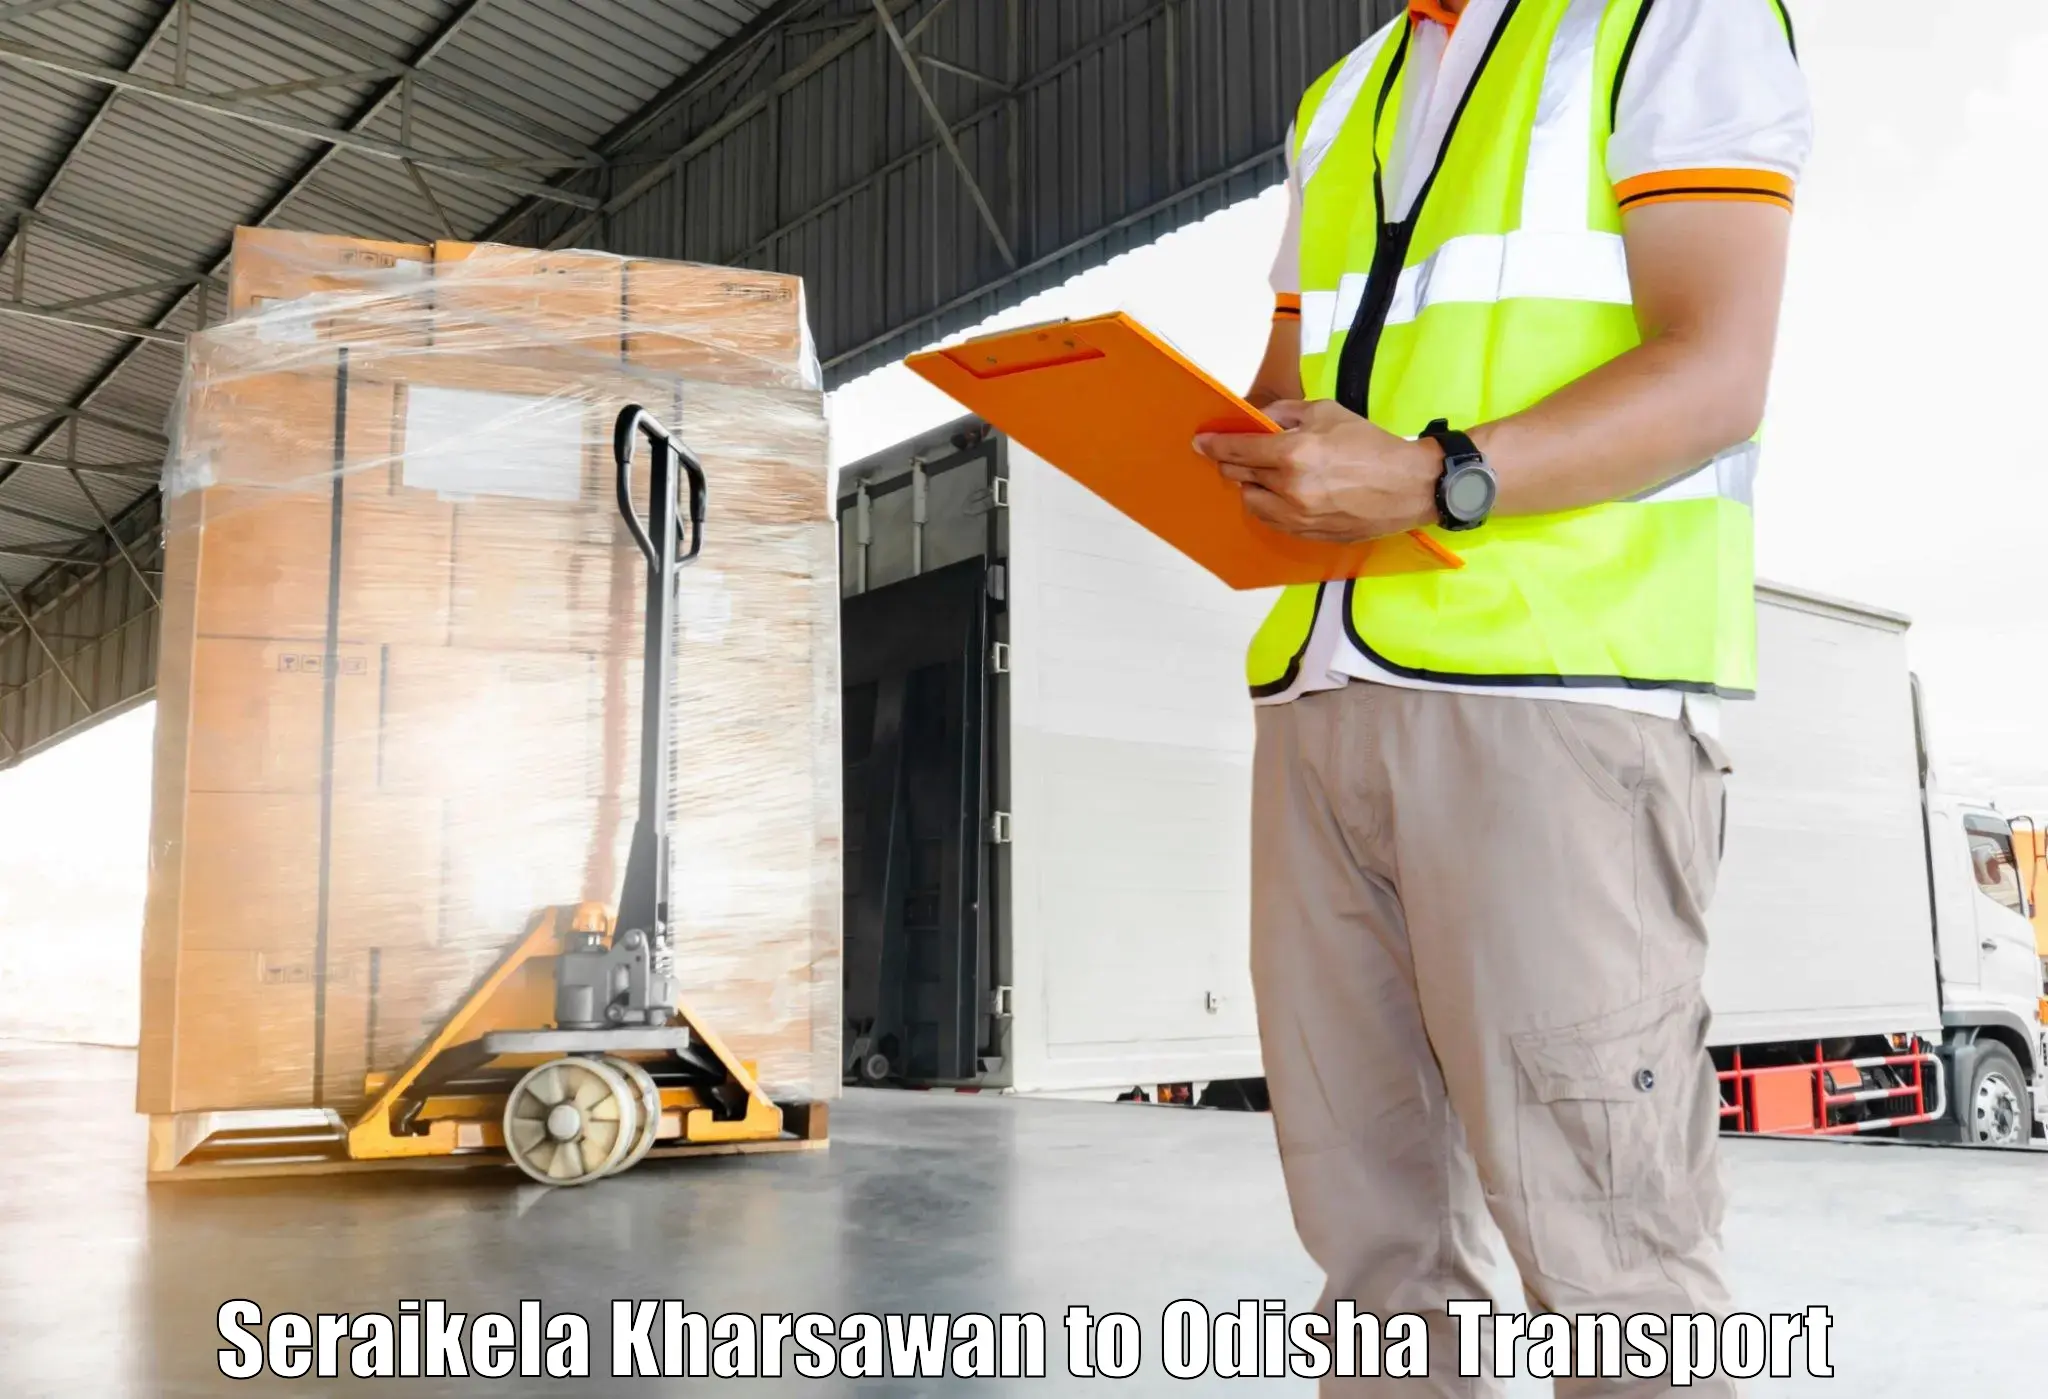 Daily parcel service transport Seraikela Kharsawan to Bangriposi